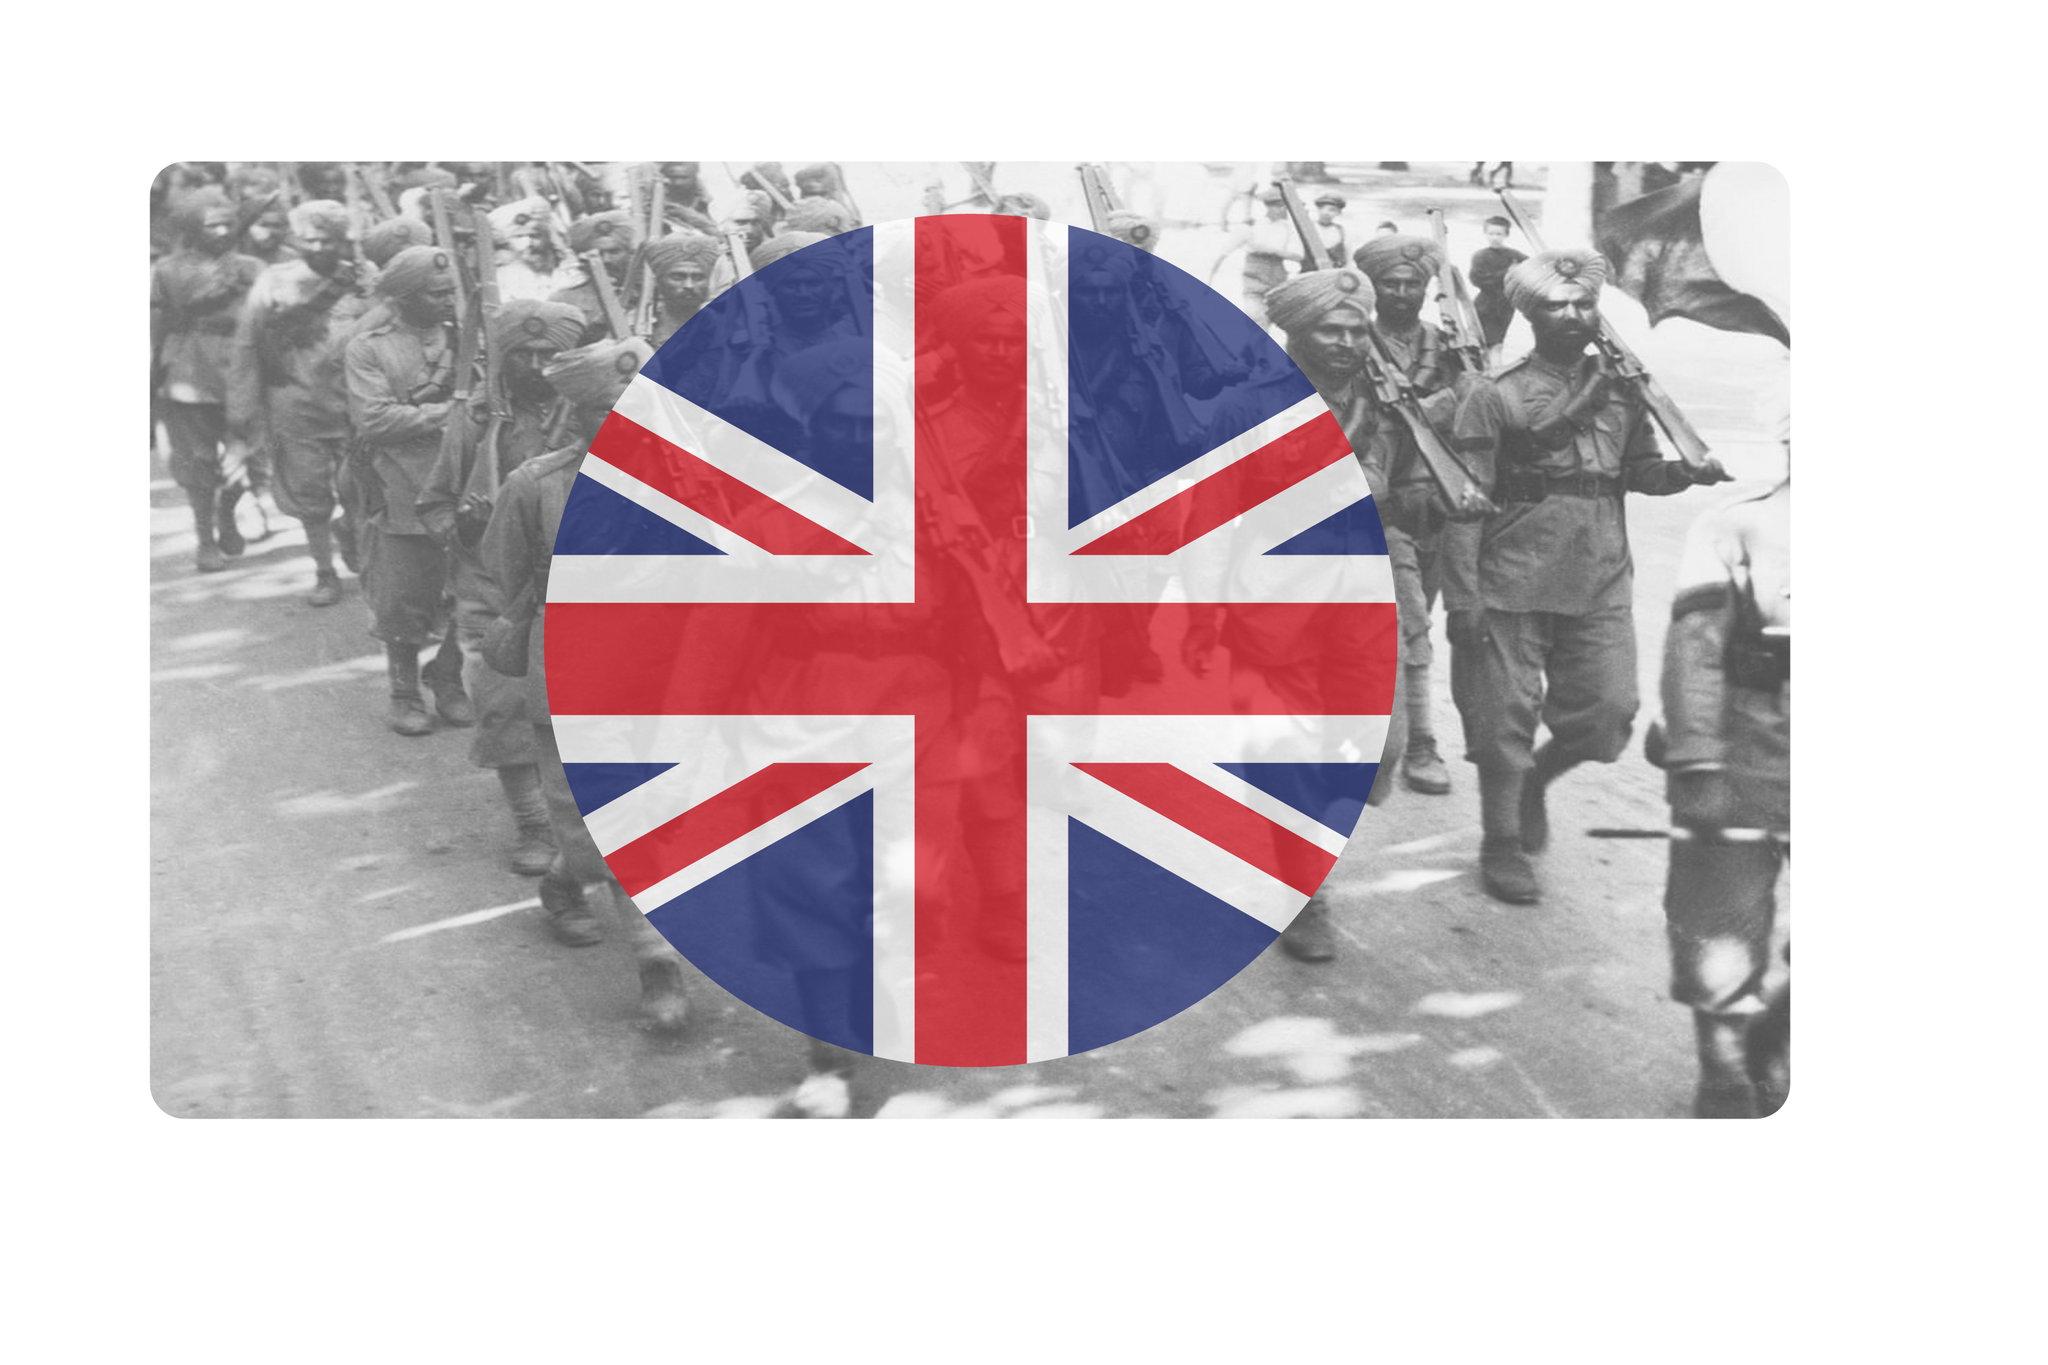 WW2 Commonwealth (Union Jack Roundel) Combat Label